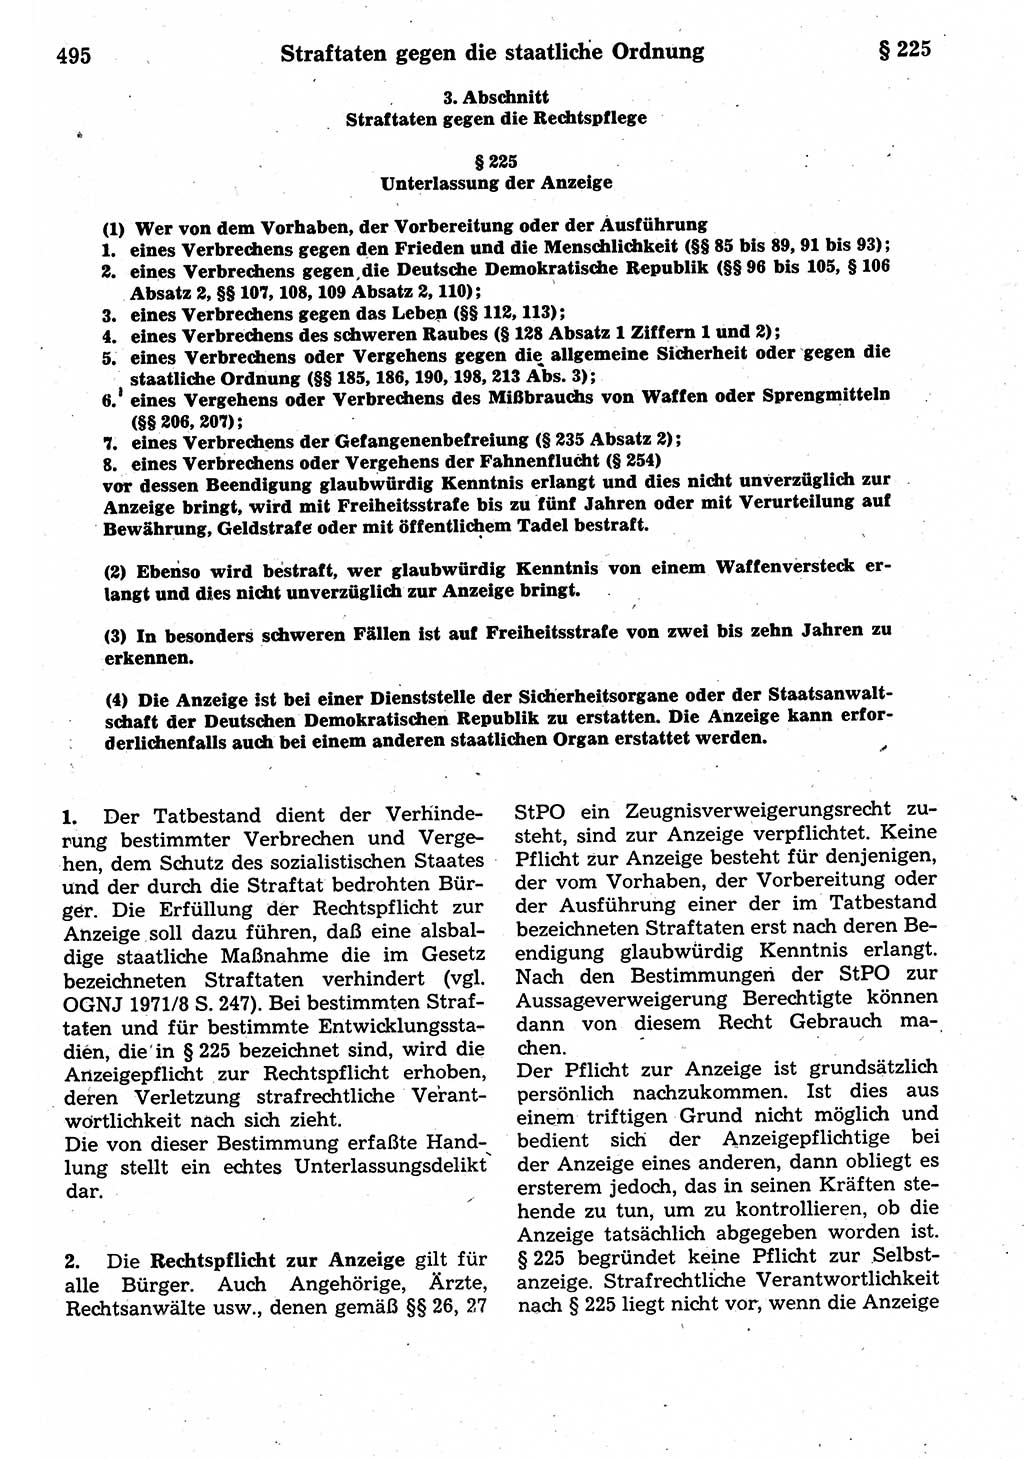 Strafrecht der Deutschen Demokratischen Republik (DDR), Kommentar zum Strafgesetzbuch (StGB) 1987, Seite 495 (Strafr. DDR Komm. StGB 1987, S. 495)